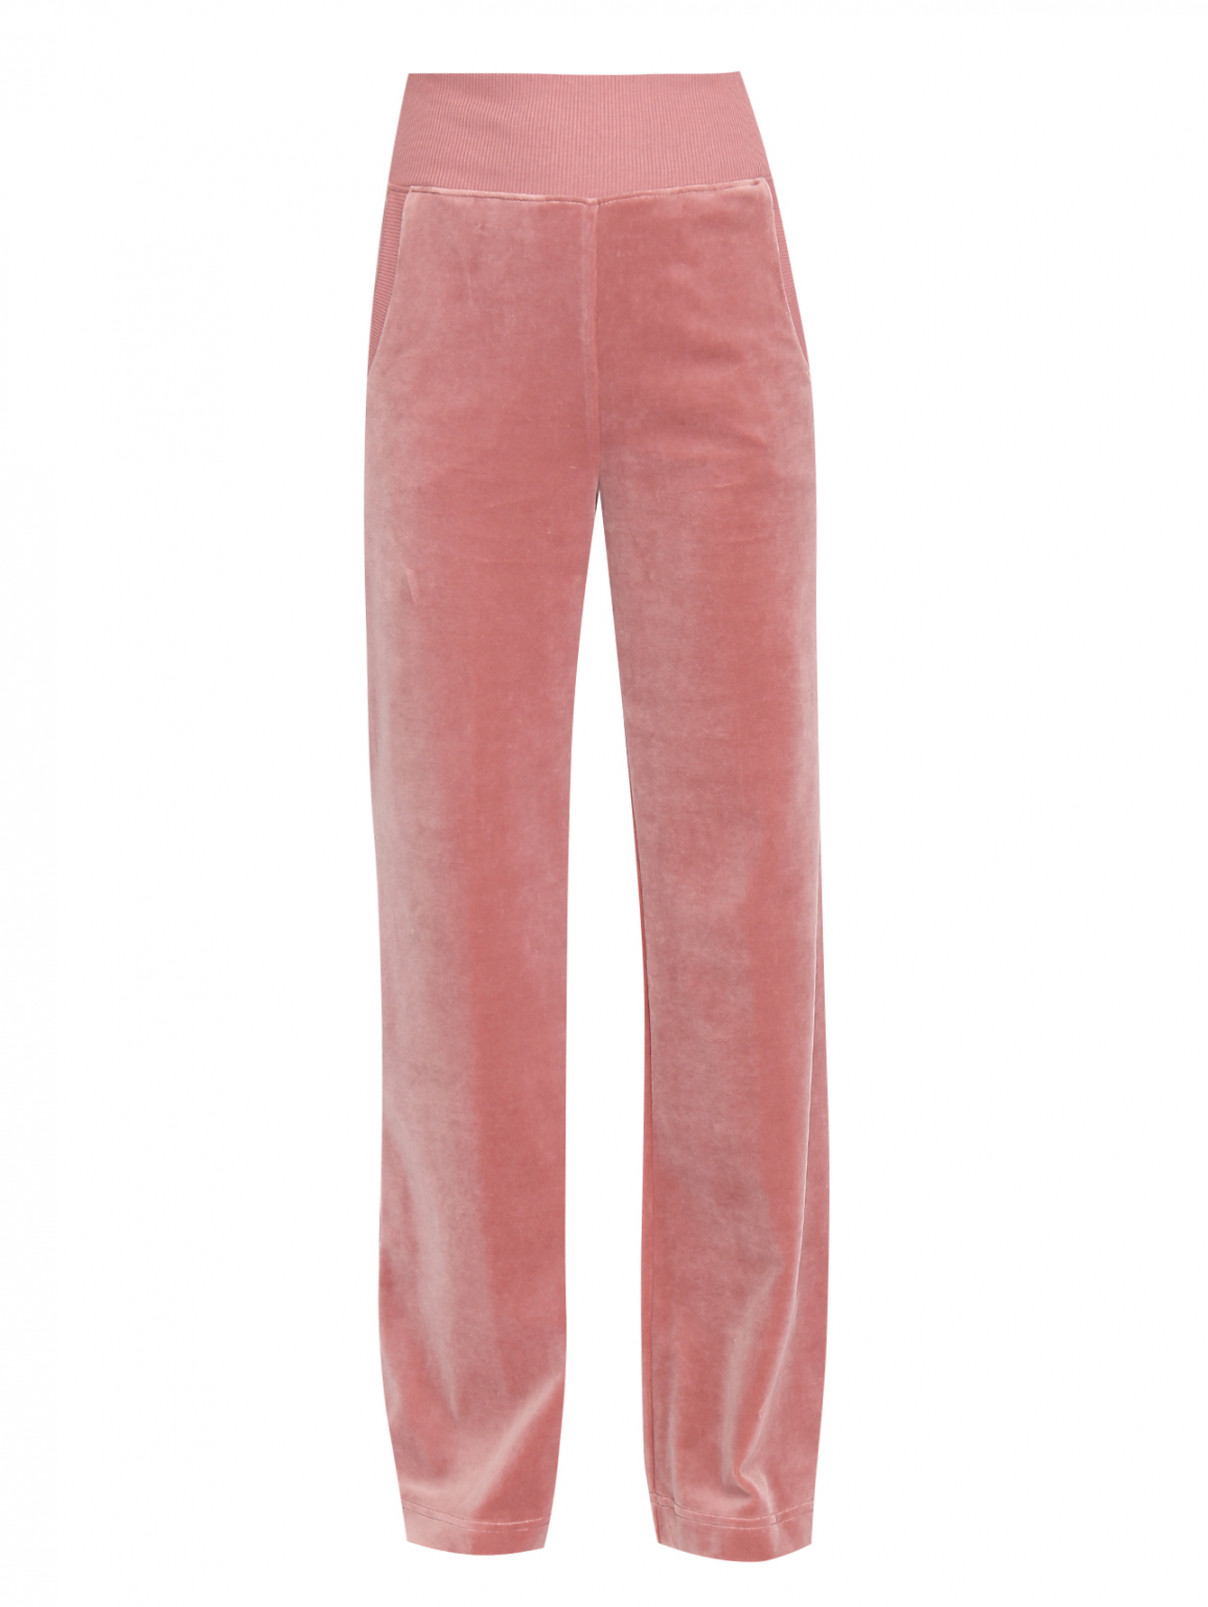 Трикотажные брюки из хлопка на резинке Alberta Ferretti  –  Общий вид  – Цвет:  Розовый